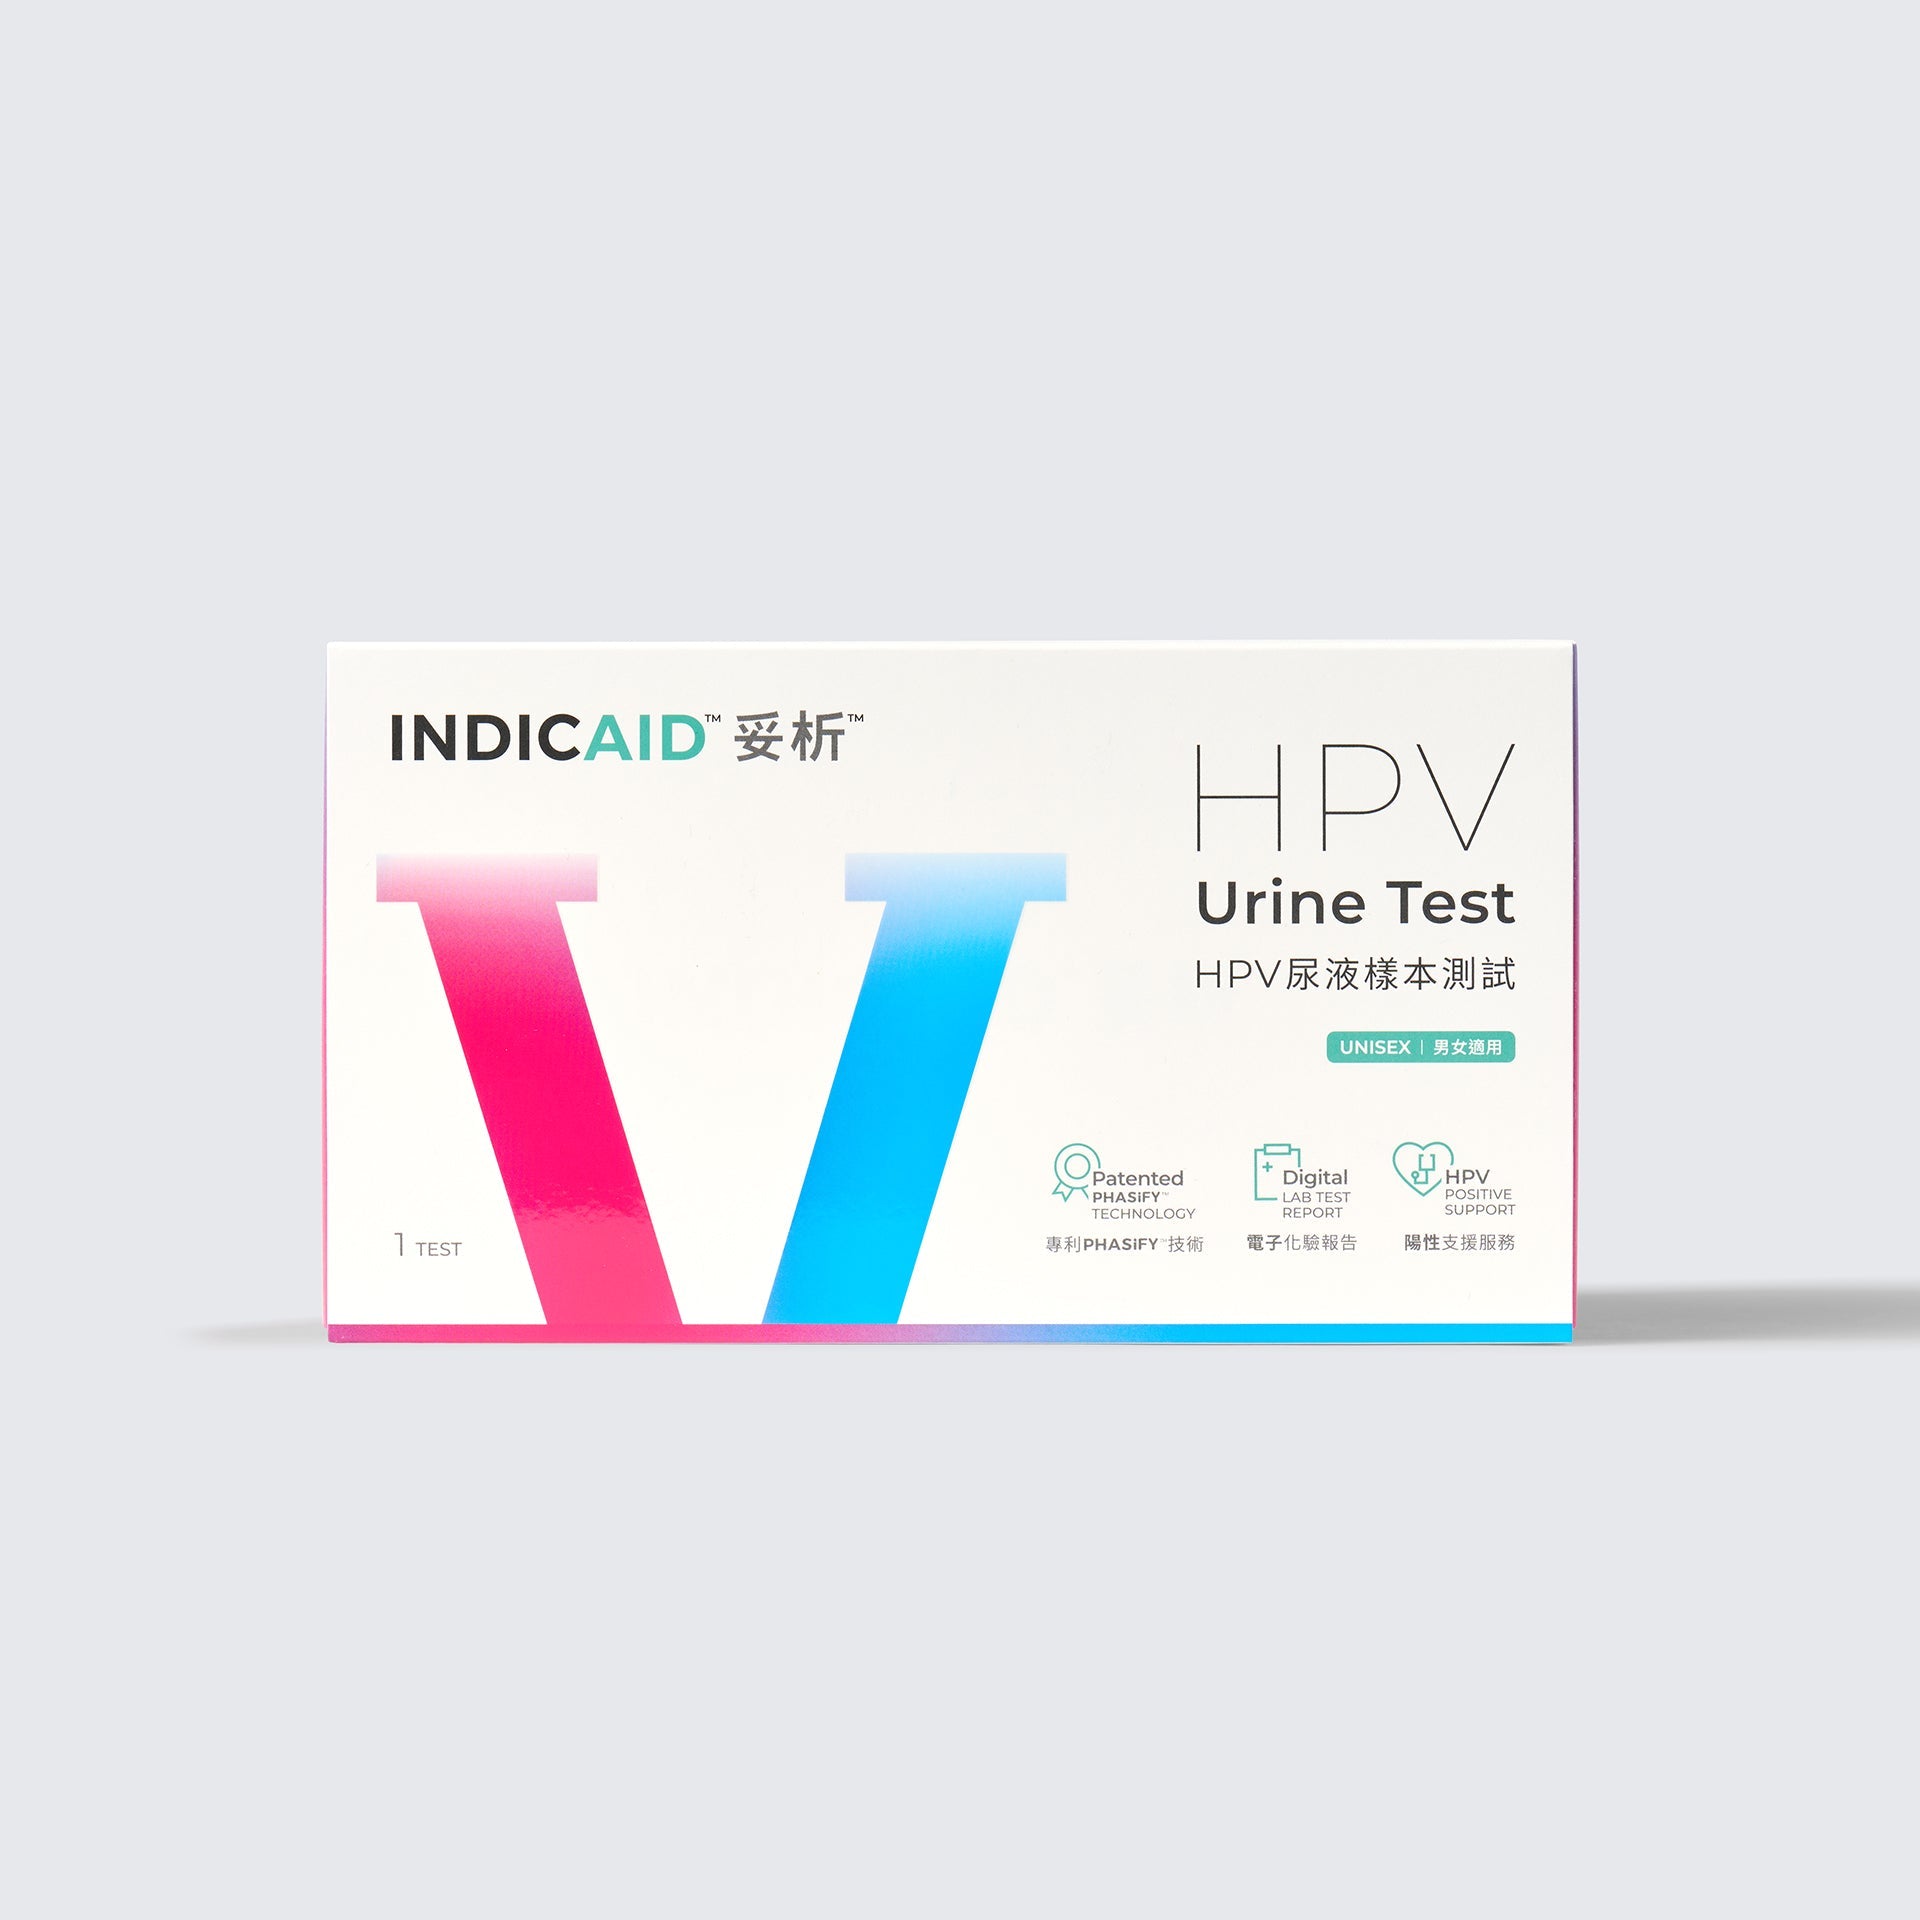 INDICAID妥析HPV病毒子宮頸癌篩查尿液測試